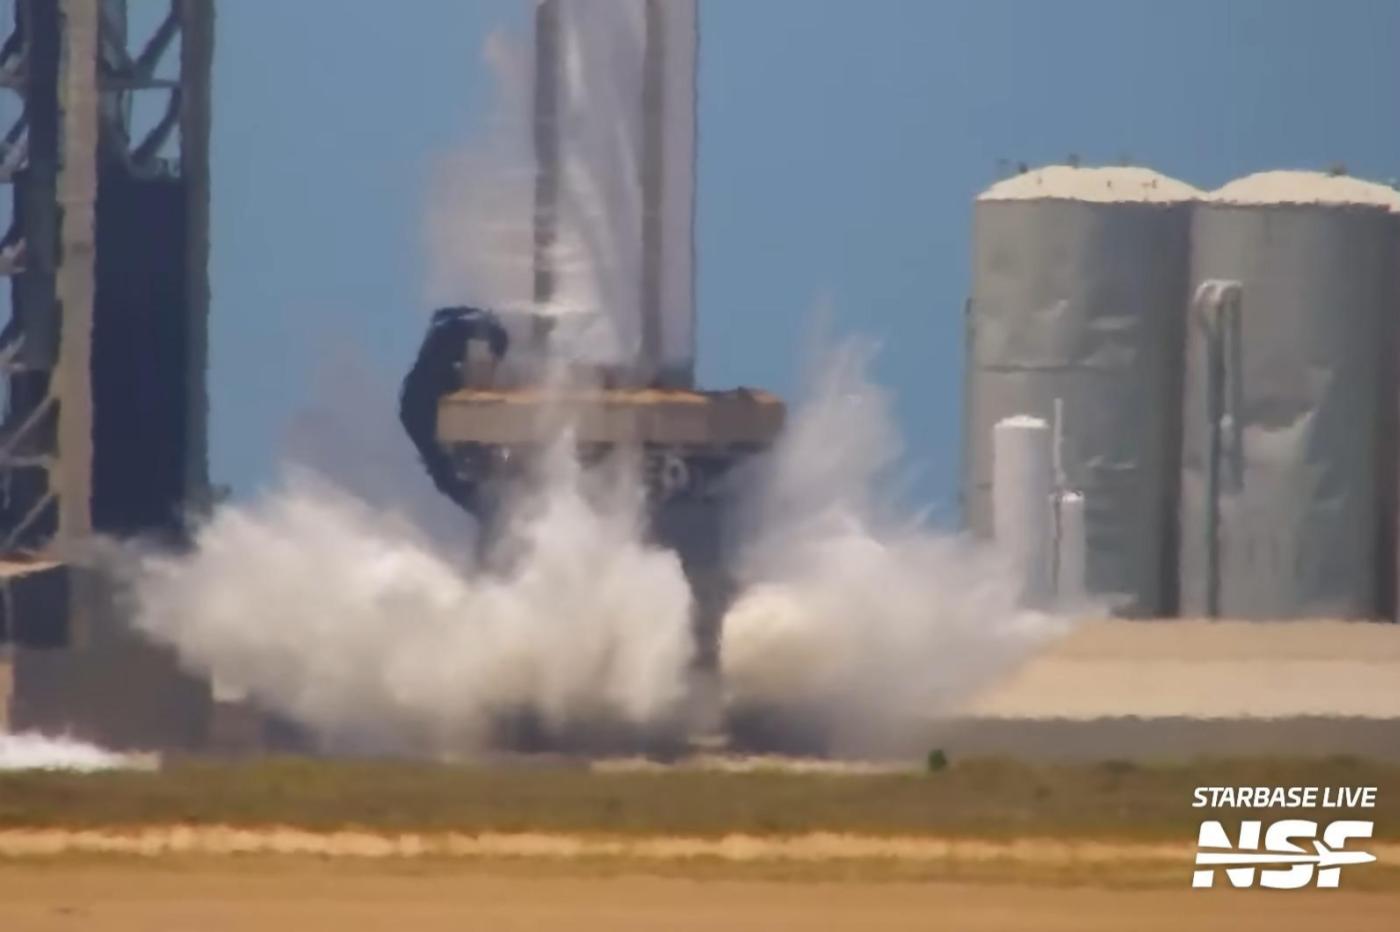 Le nouveau système de déluge de SpaceX